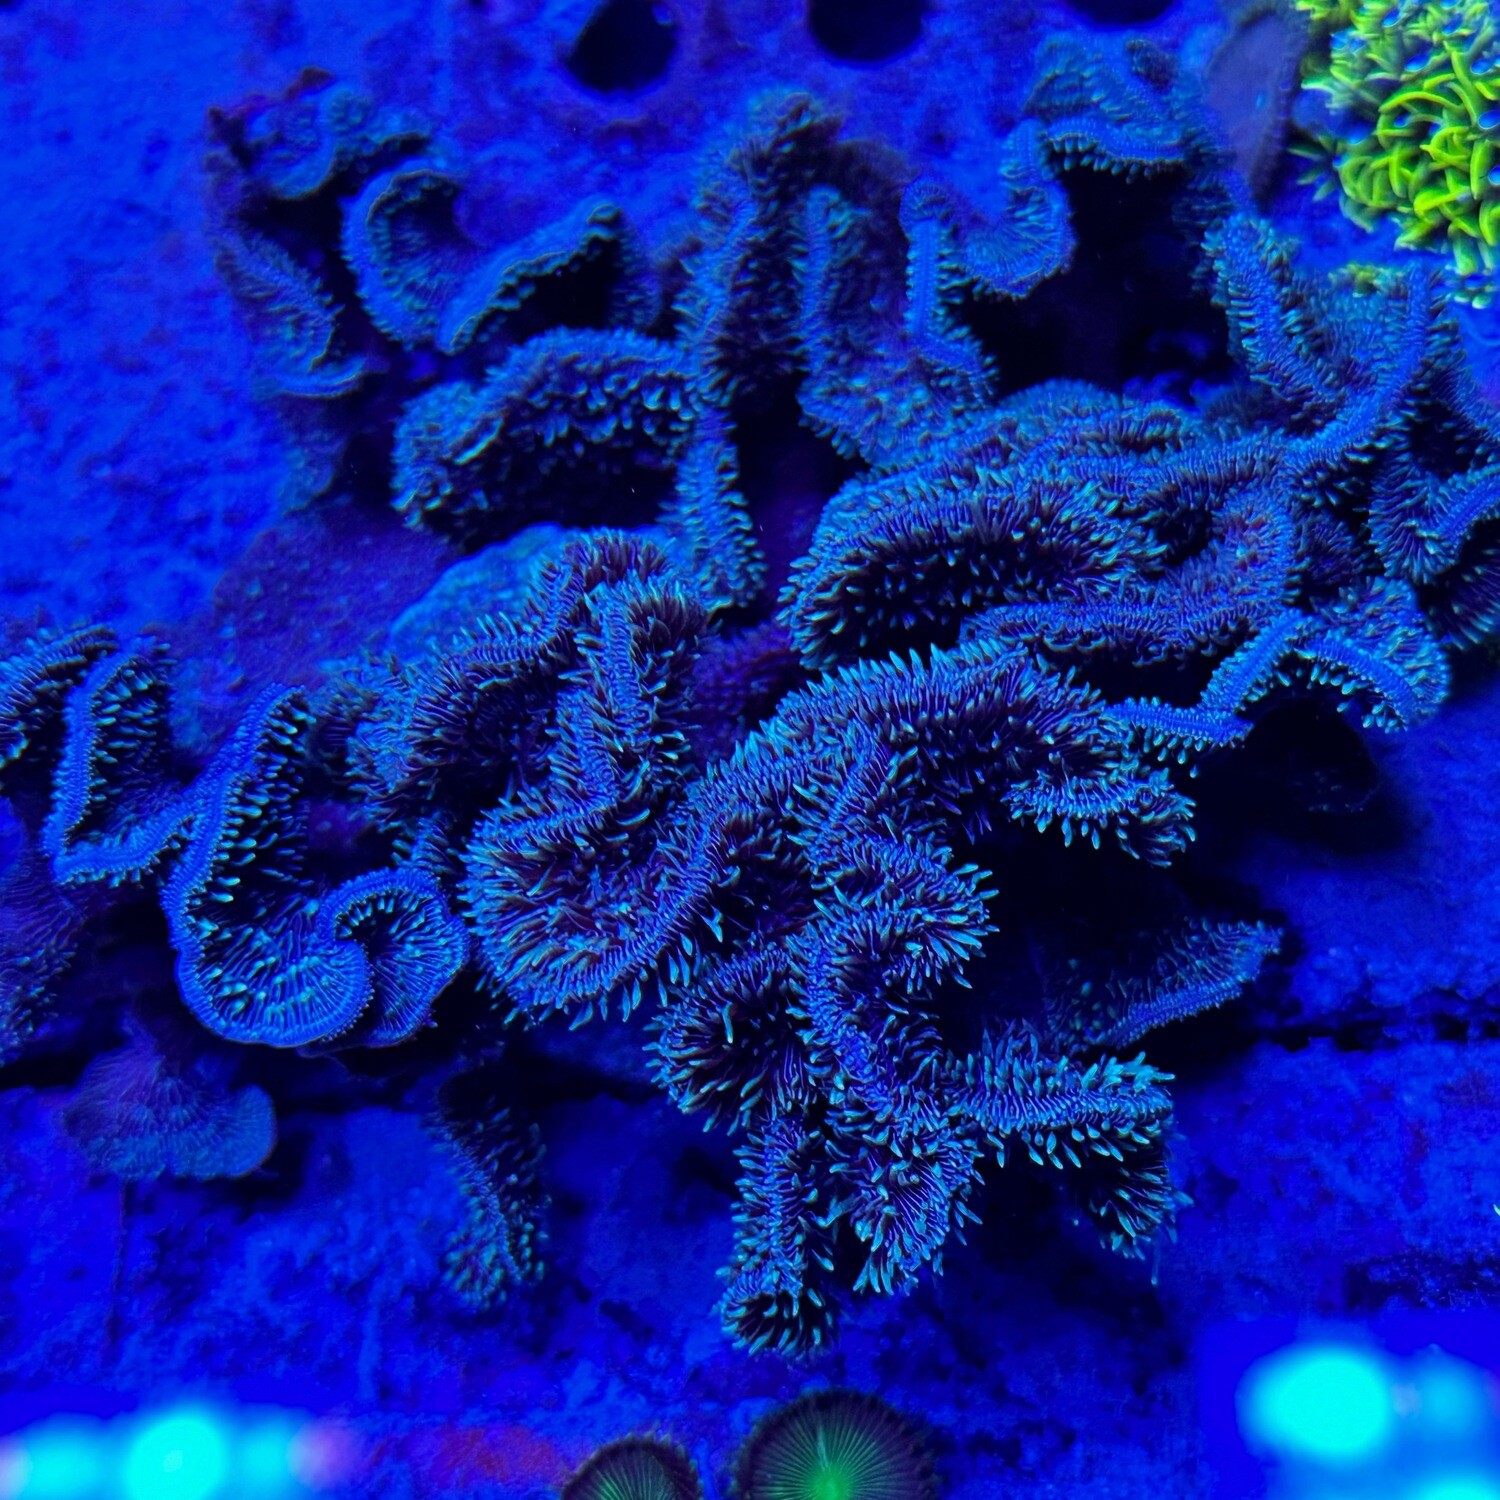 Pavona Cactus coral colony